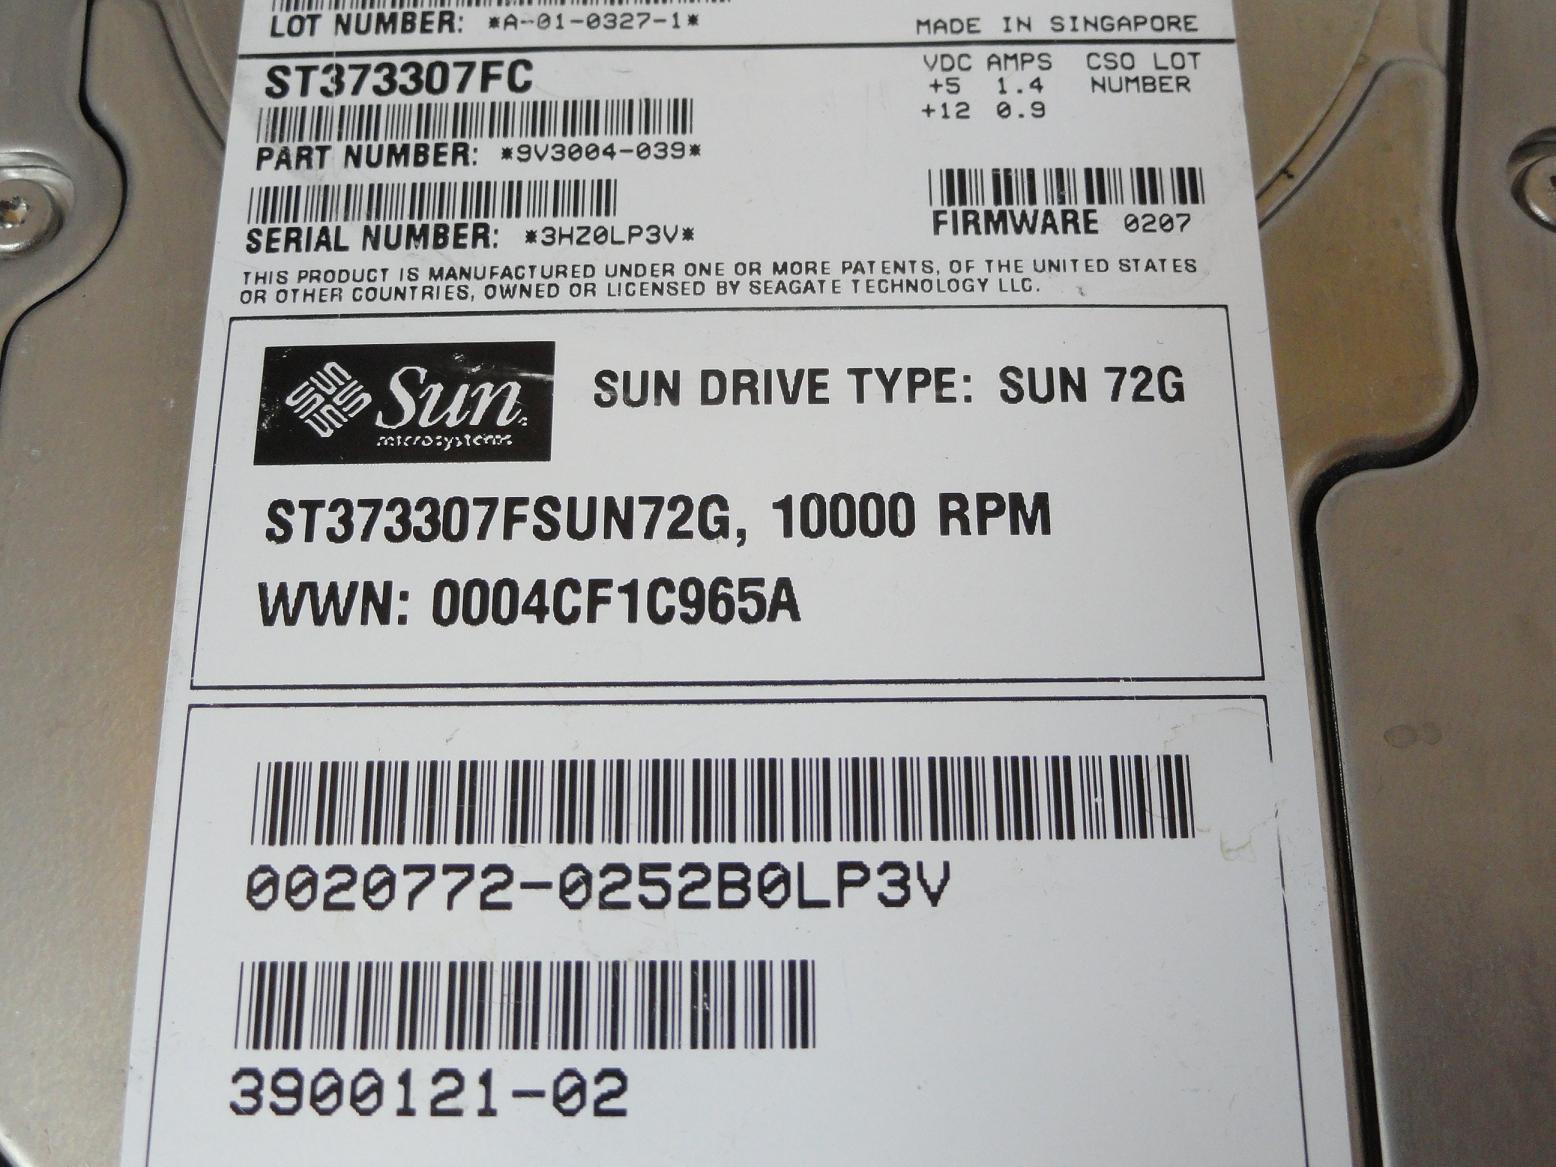 PR23850_9V3004-039_Seagate Sun 73GB Fibre Channel 10Krpm 3.5in HDD - Image3